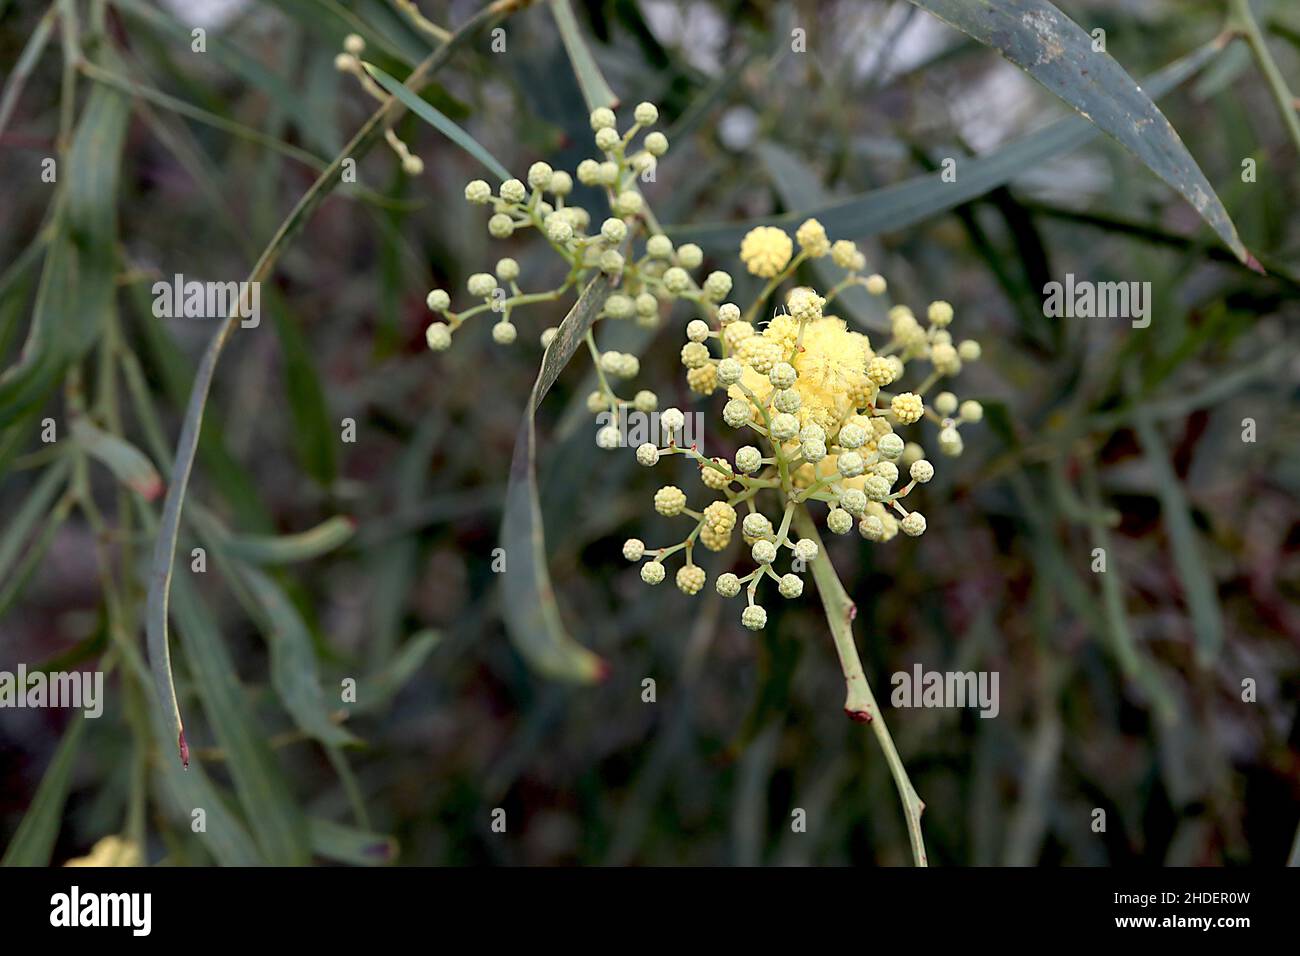 Retinodes de Acacia Retinodes wattle de agua – flores amarillas esféricas y hojas verdes medias similares al sauce, enero, Inglaterra, Reino Unido Foto de stock